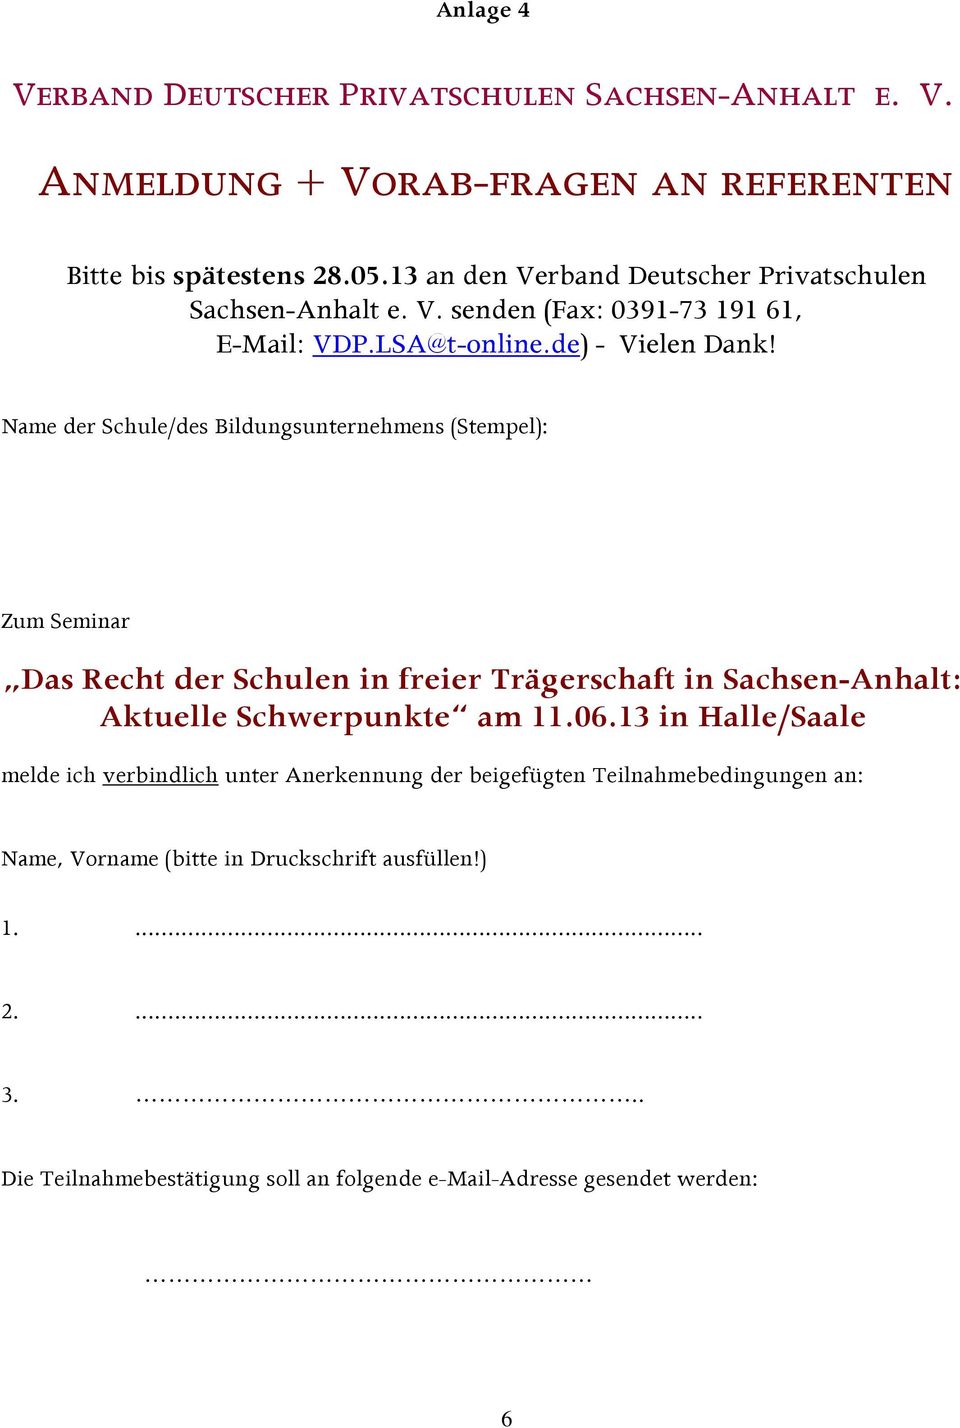 Name der Schule/des Bildungsunternehmens (Stempel): Zum Seminar Das Recht der Schulen in freier Trägerschaft in Sachsen-Anhalt: Aktuelle Schwerpunkte am 11.06.